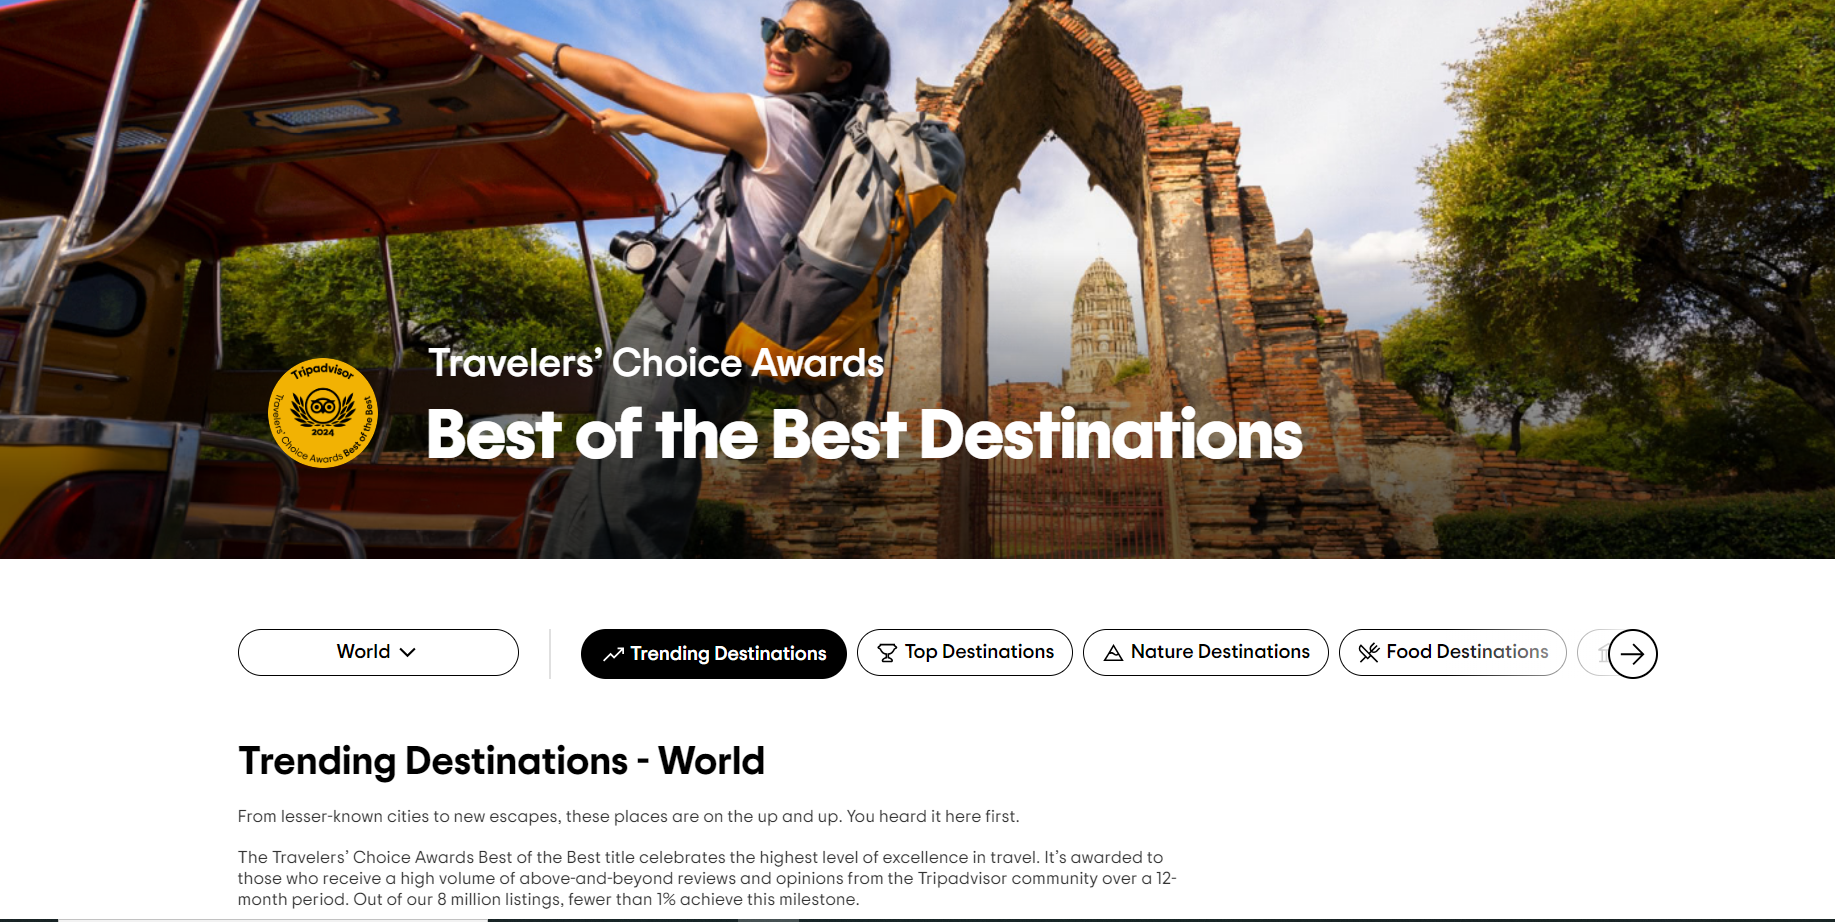 Giải Travelers' Choice Awards - Best of the Best Destinations tôn vinh các điểm đến đạt mức độ xuất sắc cao nhất trong lĩnh vực du lịch, nhận được đánh giá vượt trội từ cộng đồng TripAdvisor trong khoảng thời gian 12 tháng. Trong số 8 triệu hồ sơ, chỉ có chưa đến 1% đạt được mốc này